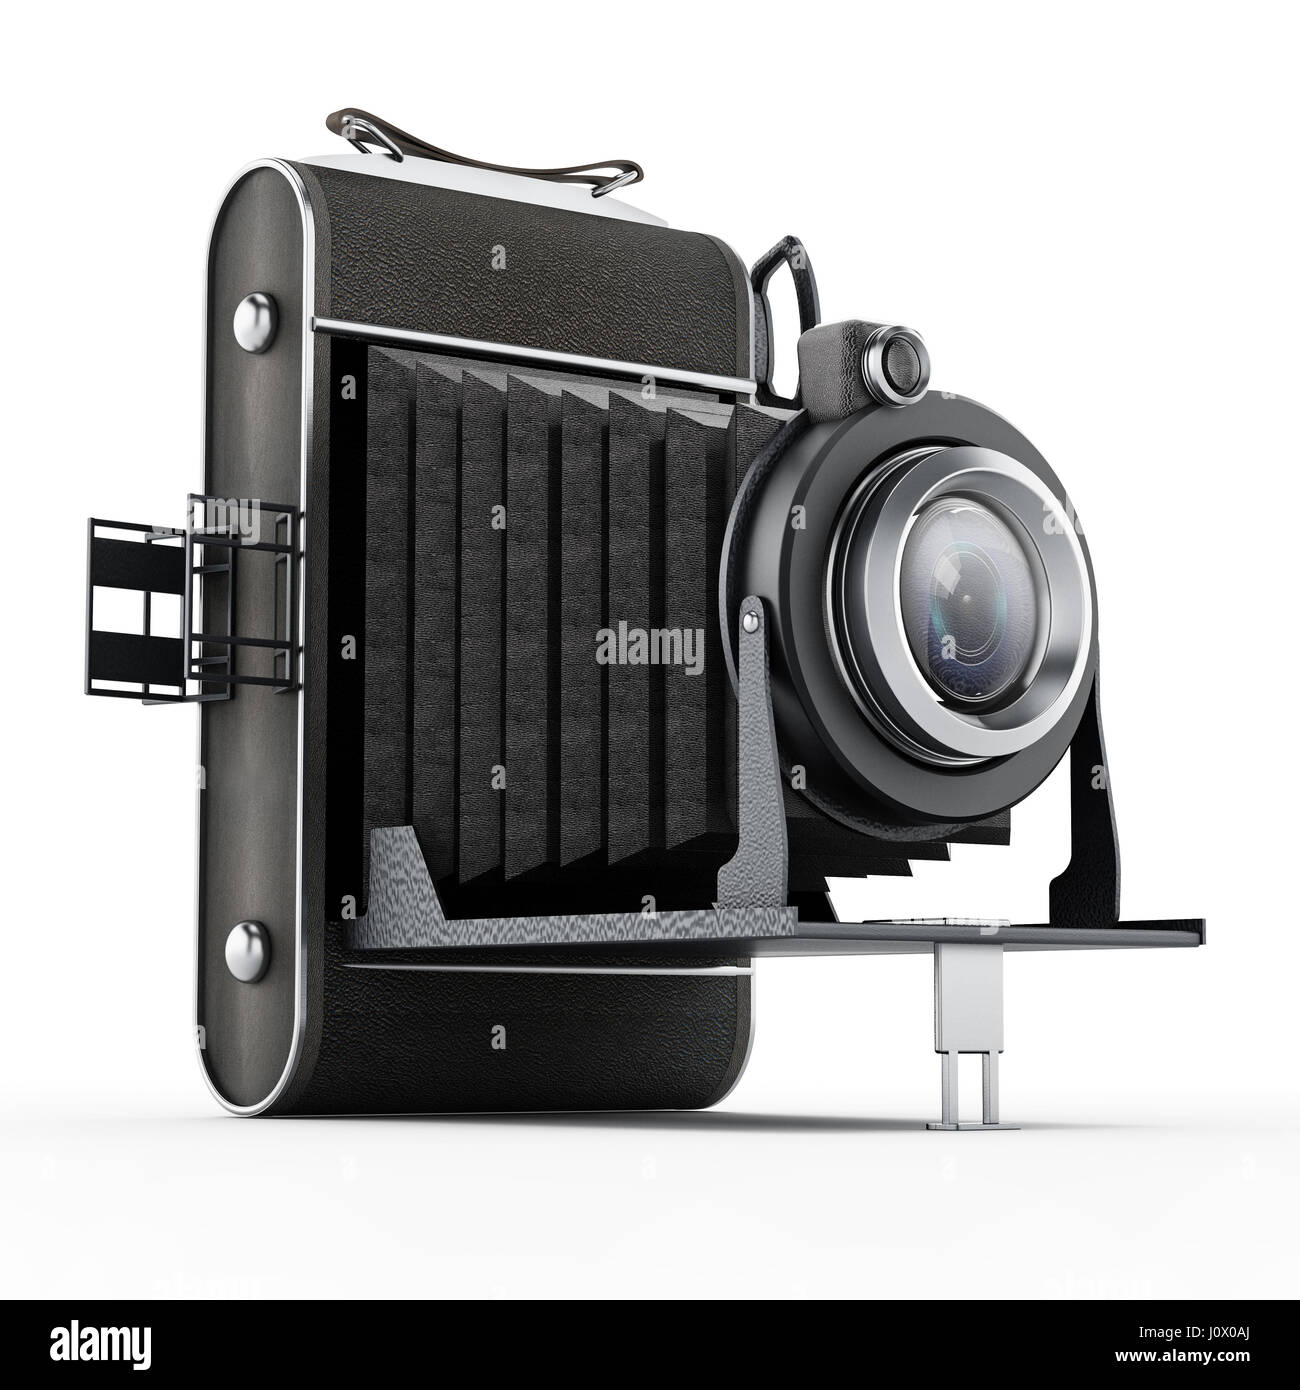 Caméra analogique vintage isolé sur fond blanc. Banque D'Images